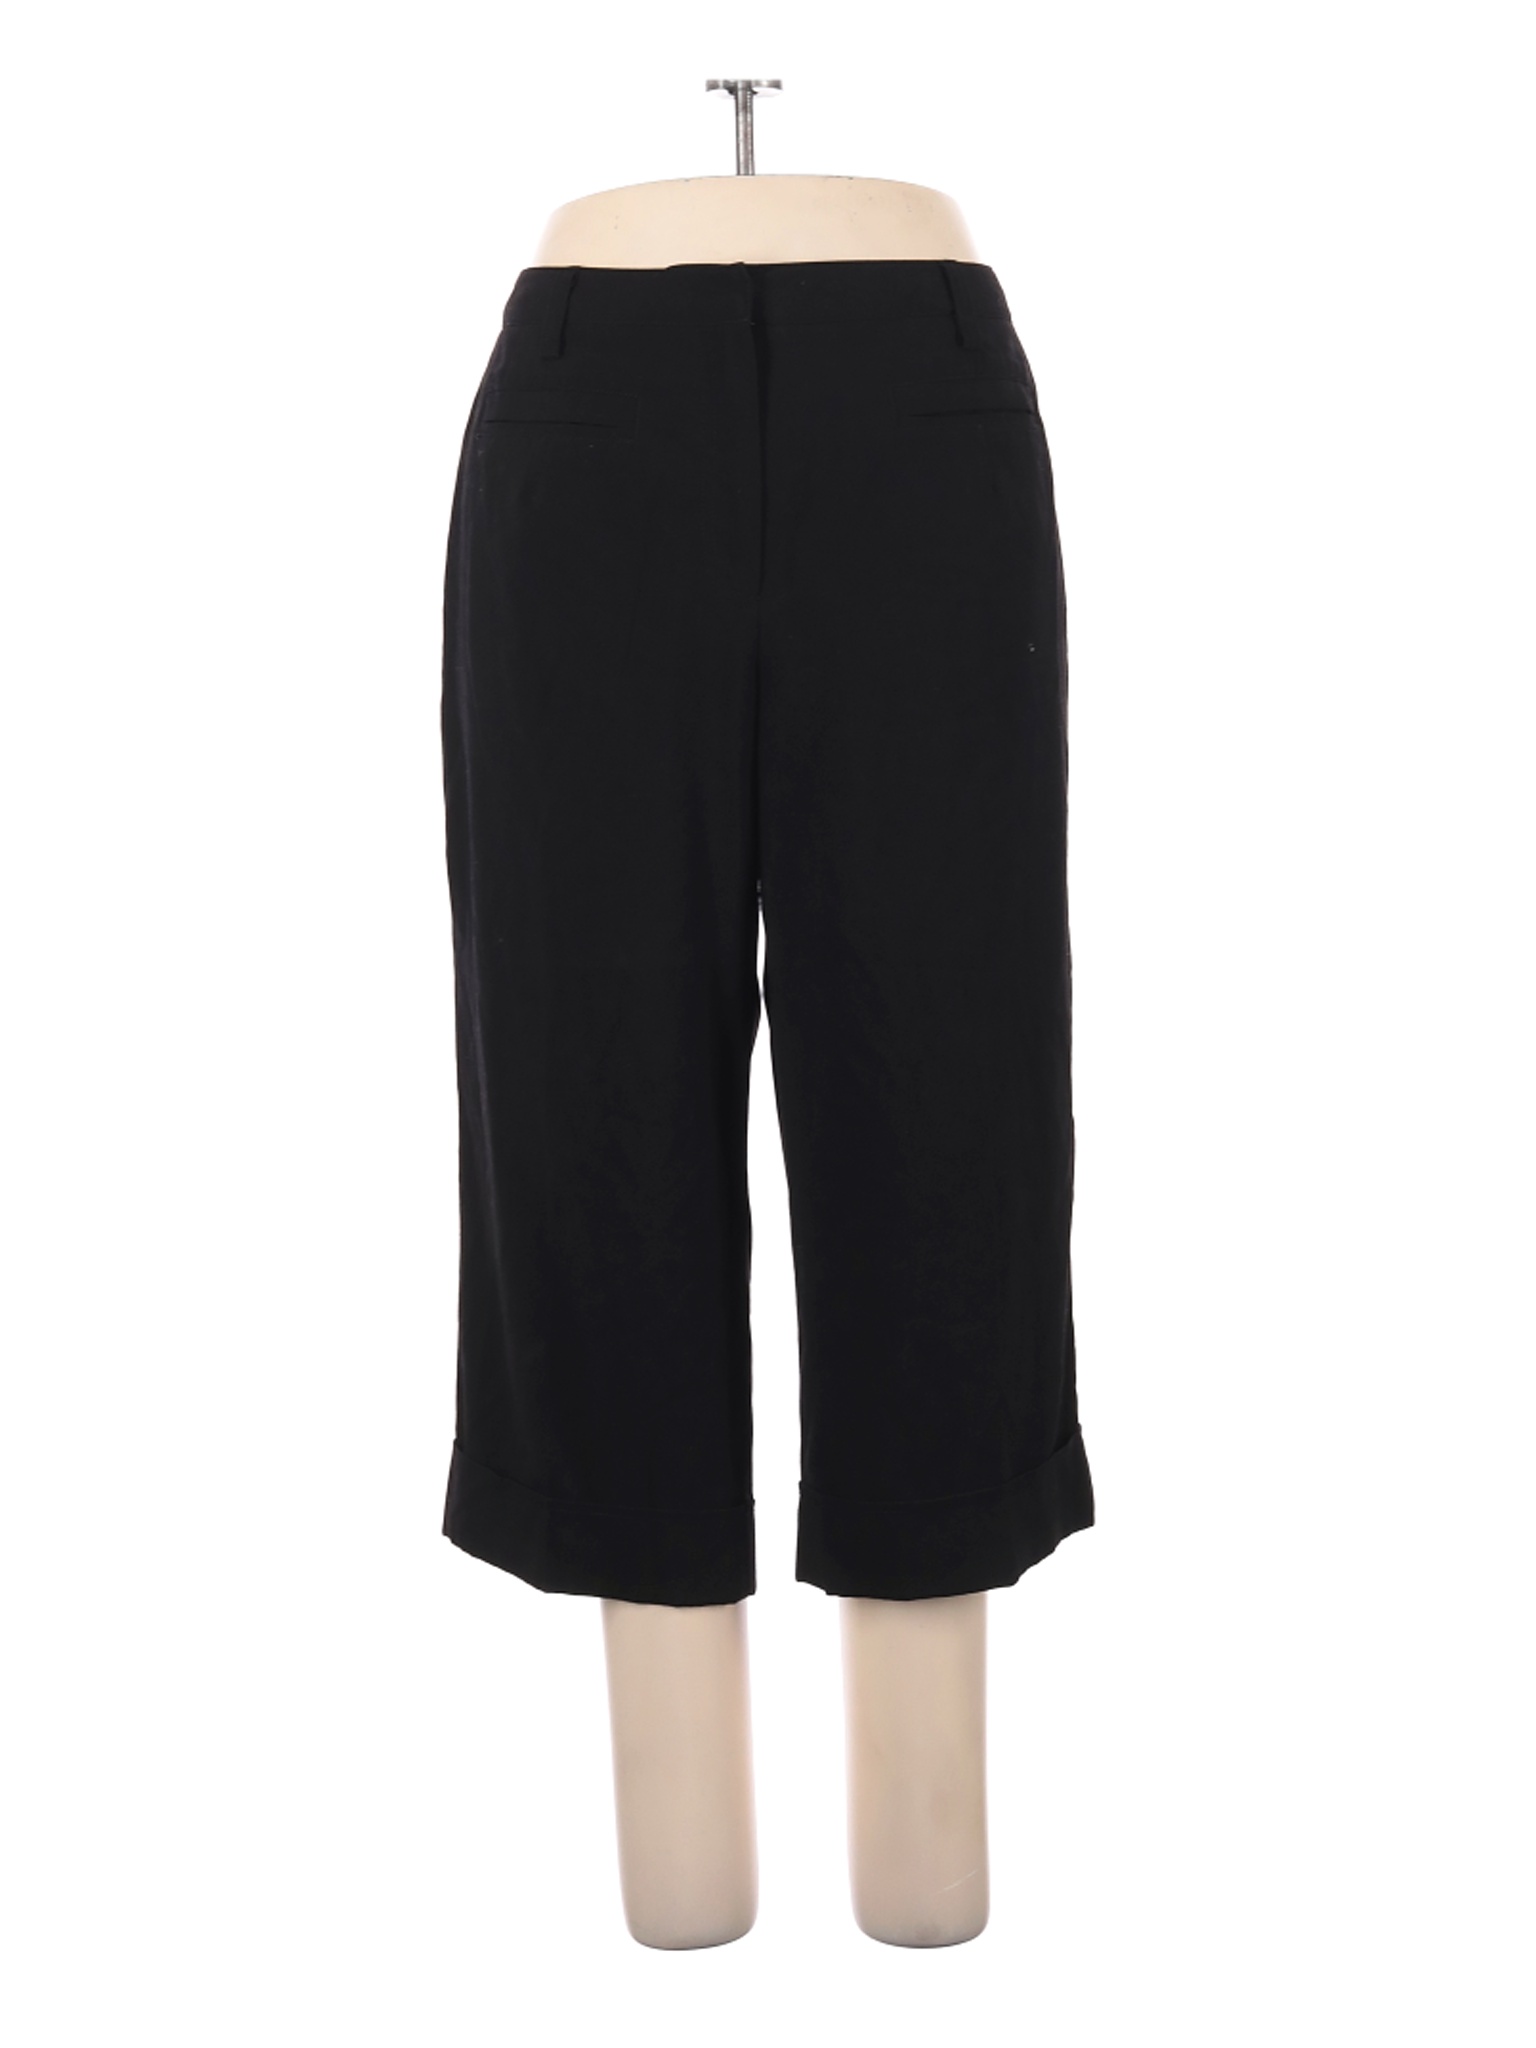 DressBarn Women Black Dress Pants 18 Plus | eBay